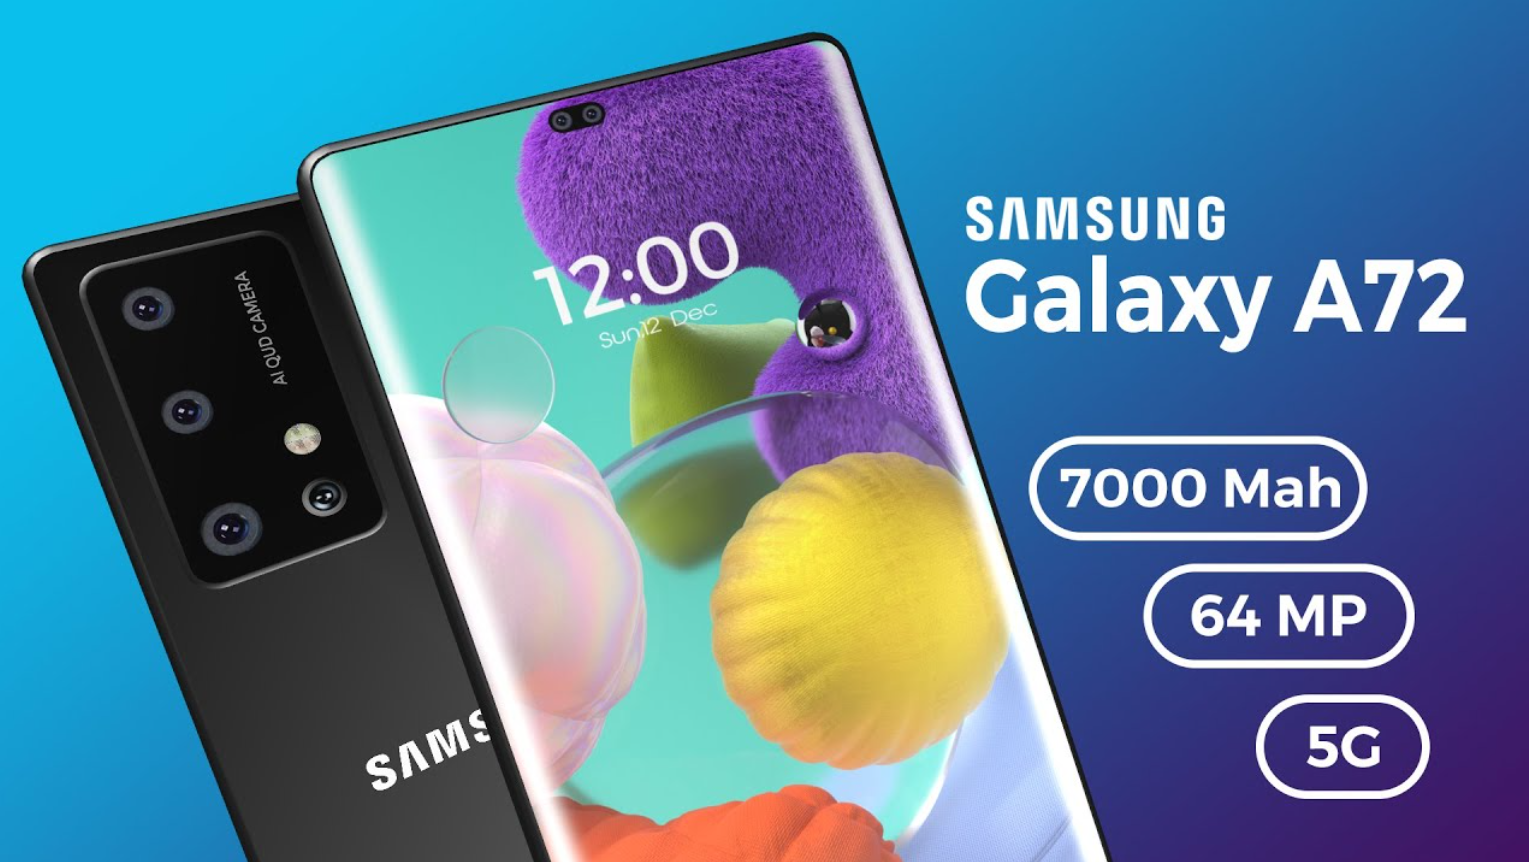 Samsung galaxy a15 4g цены